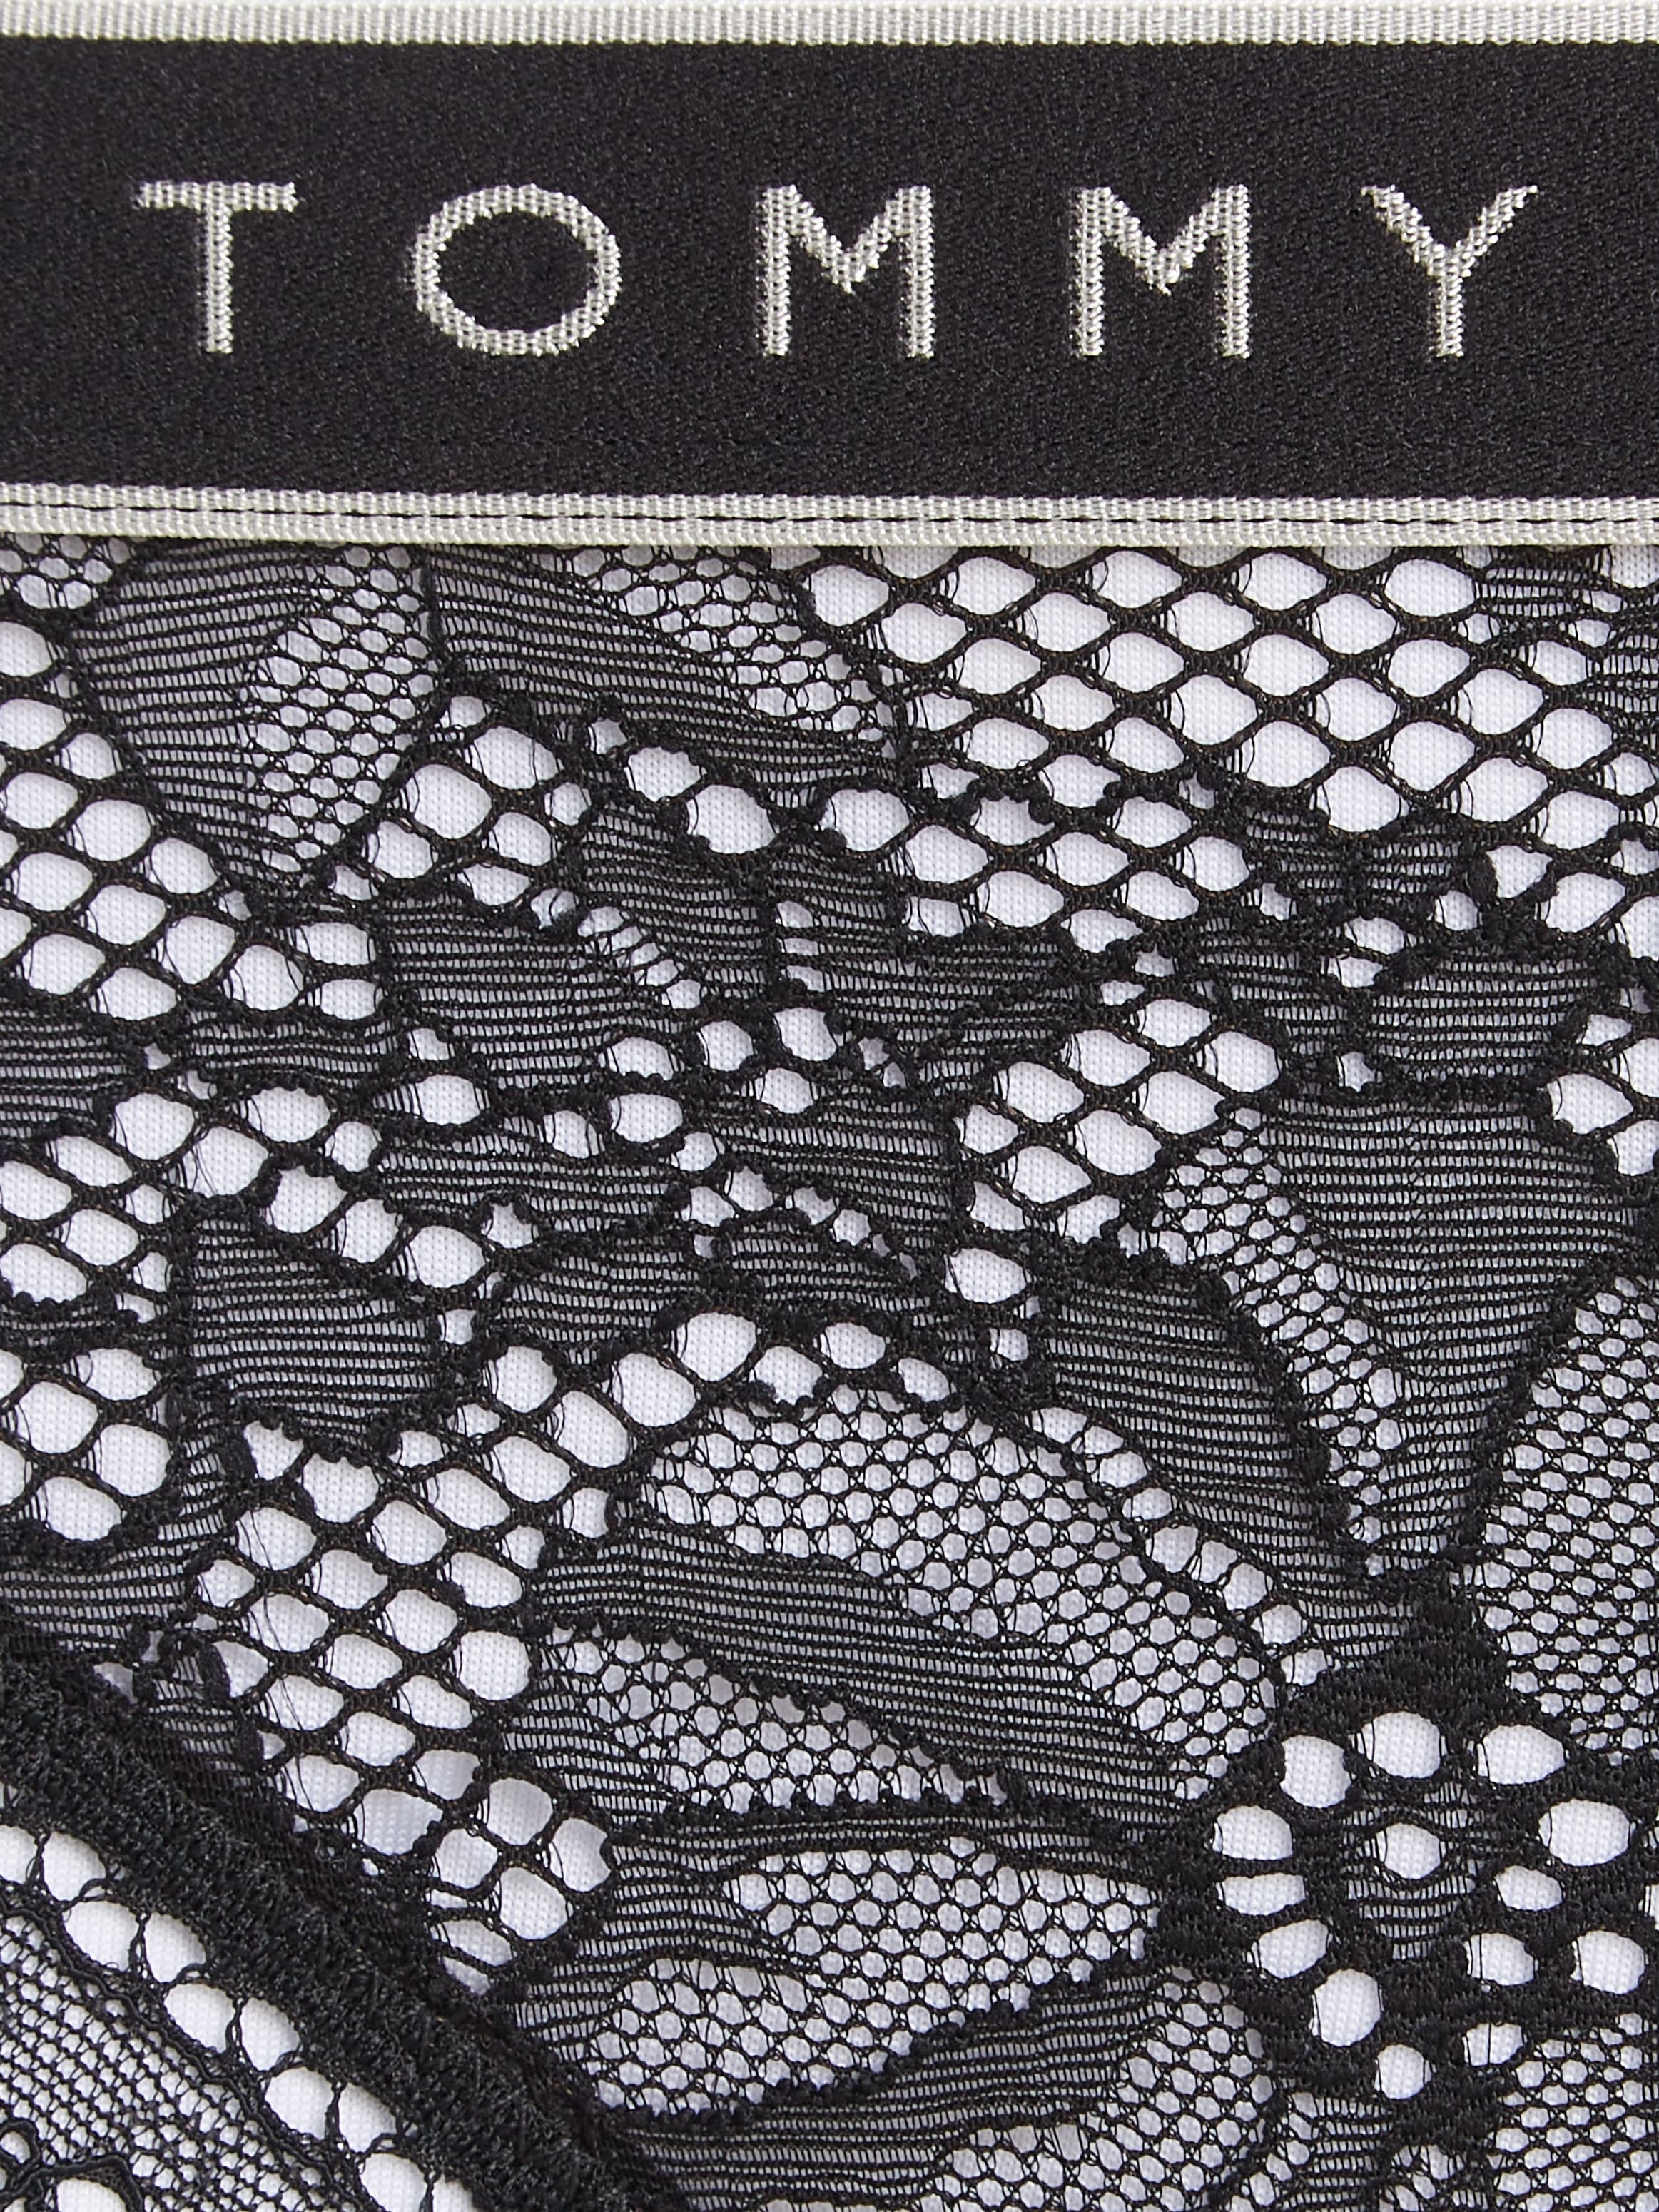 Tommy Hilfiger Underwear T-String »THONG«, mit Spitze und Logobund